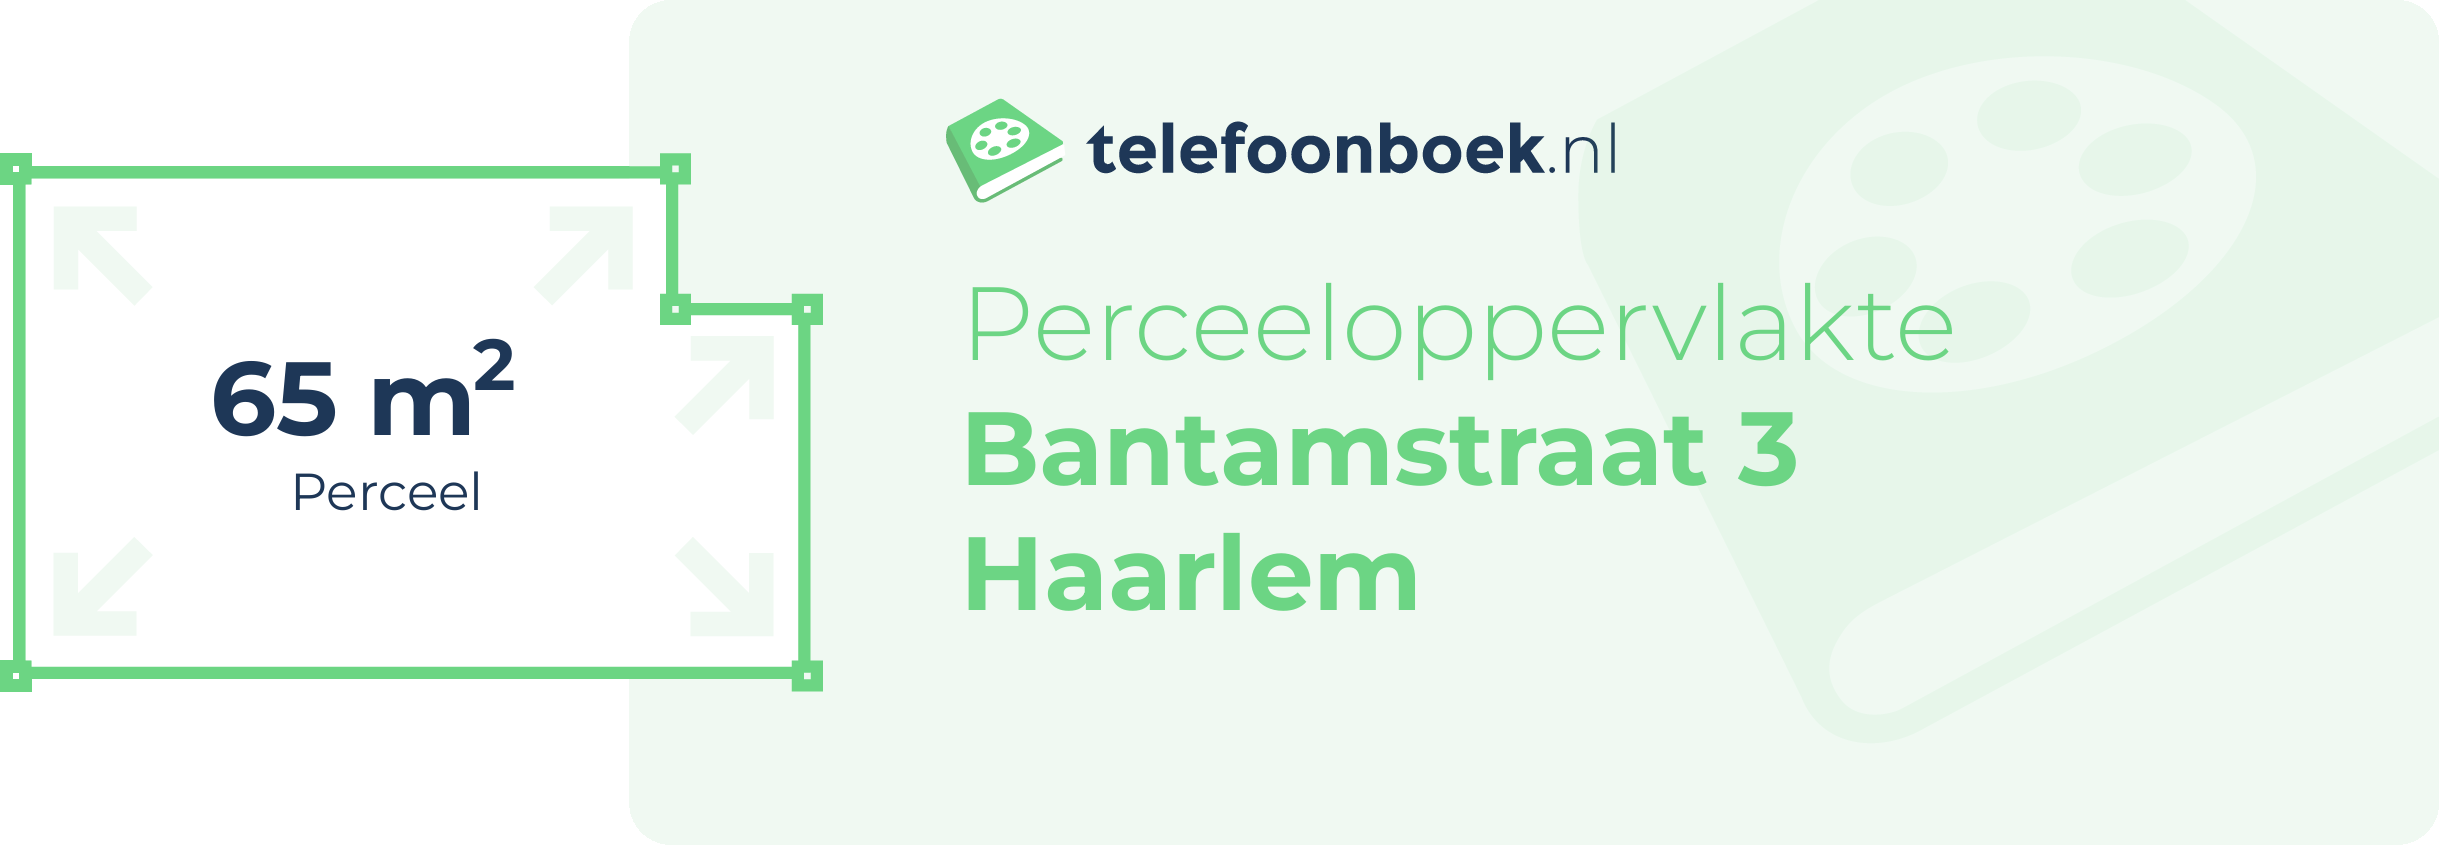 Perceeloppervlakte Bantamstraat 3 Haarlem